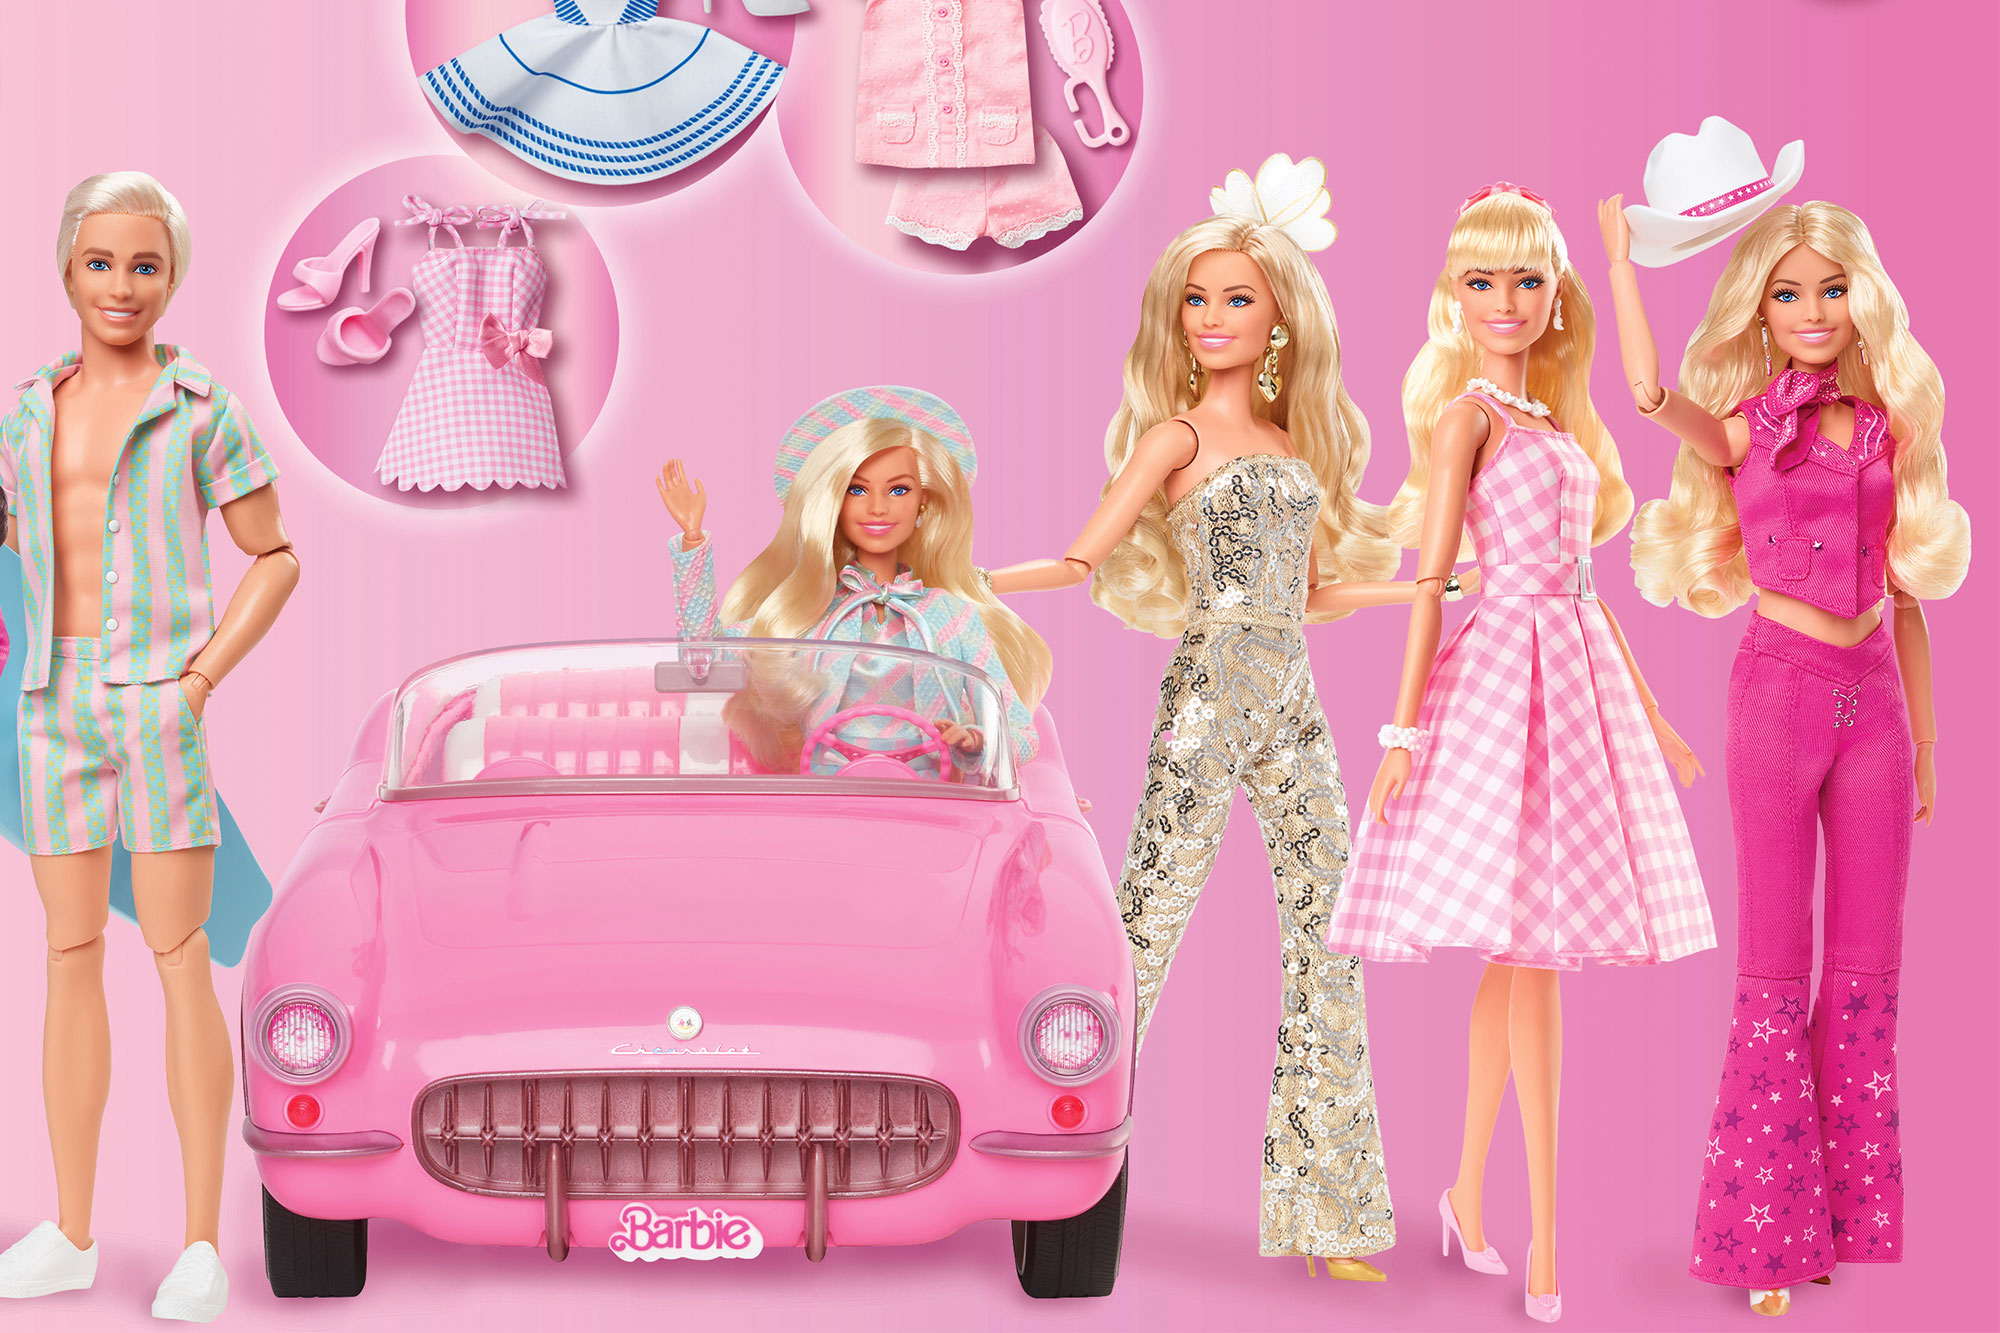 Película de Barbie, Mattel lanza nueva colección para celebrar el film con Margot Robbie